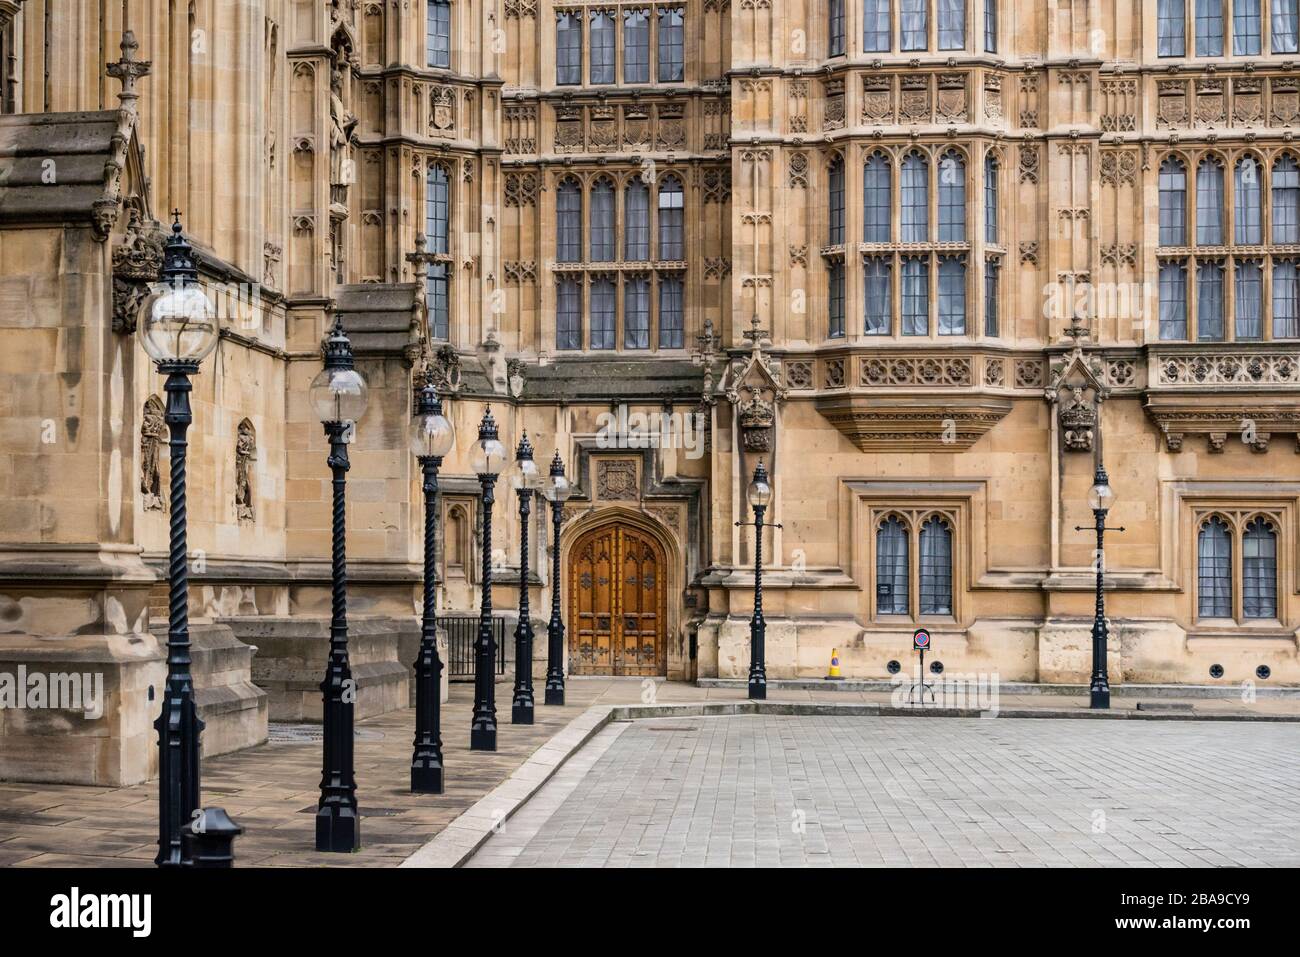 Dettagli architettonici del Palazzo di Westminster, Londra, Regno Unito Foto Stock